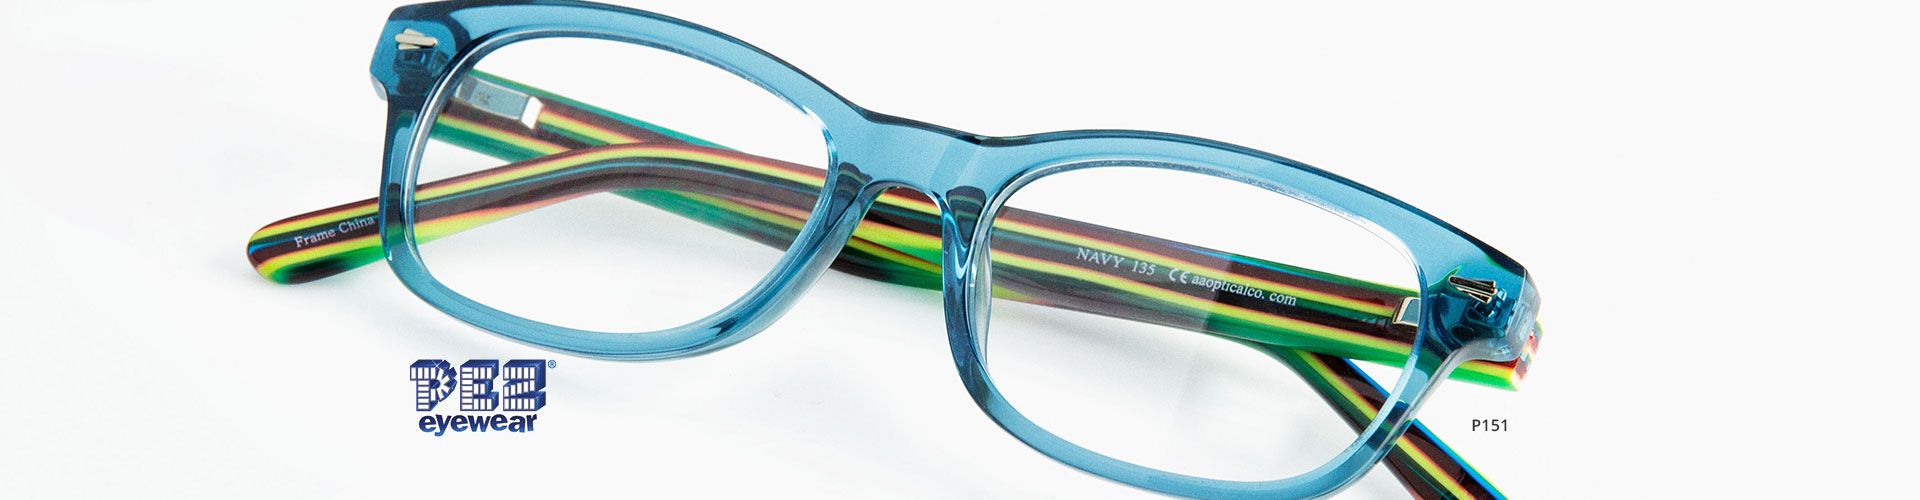 Shop Pez Eyeglasses - model P151 featured